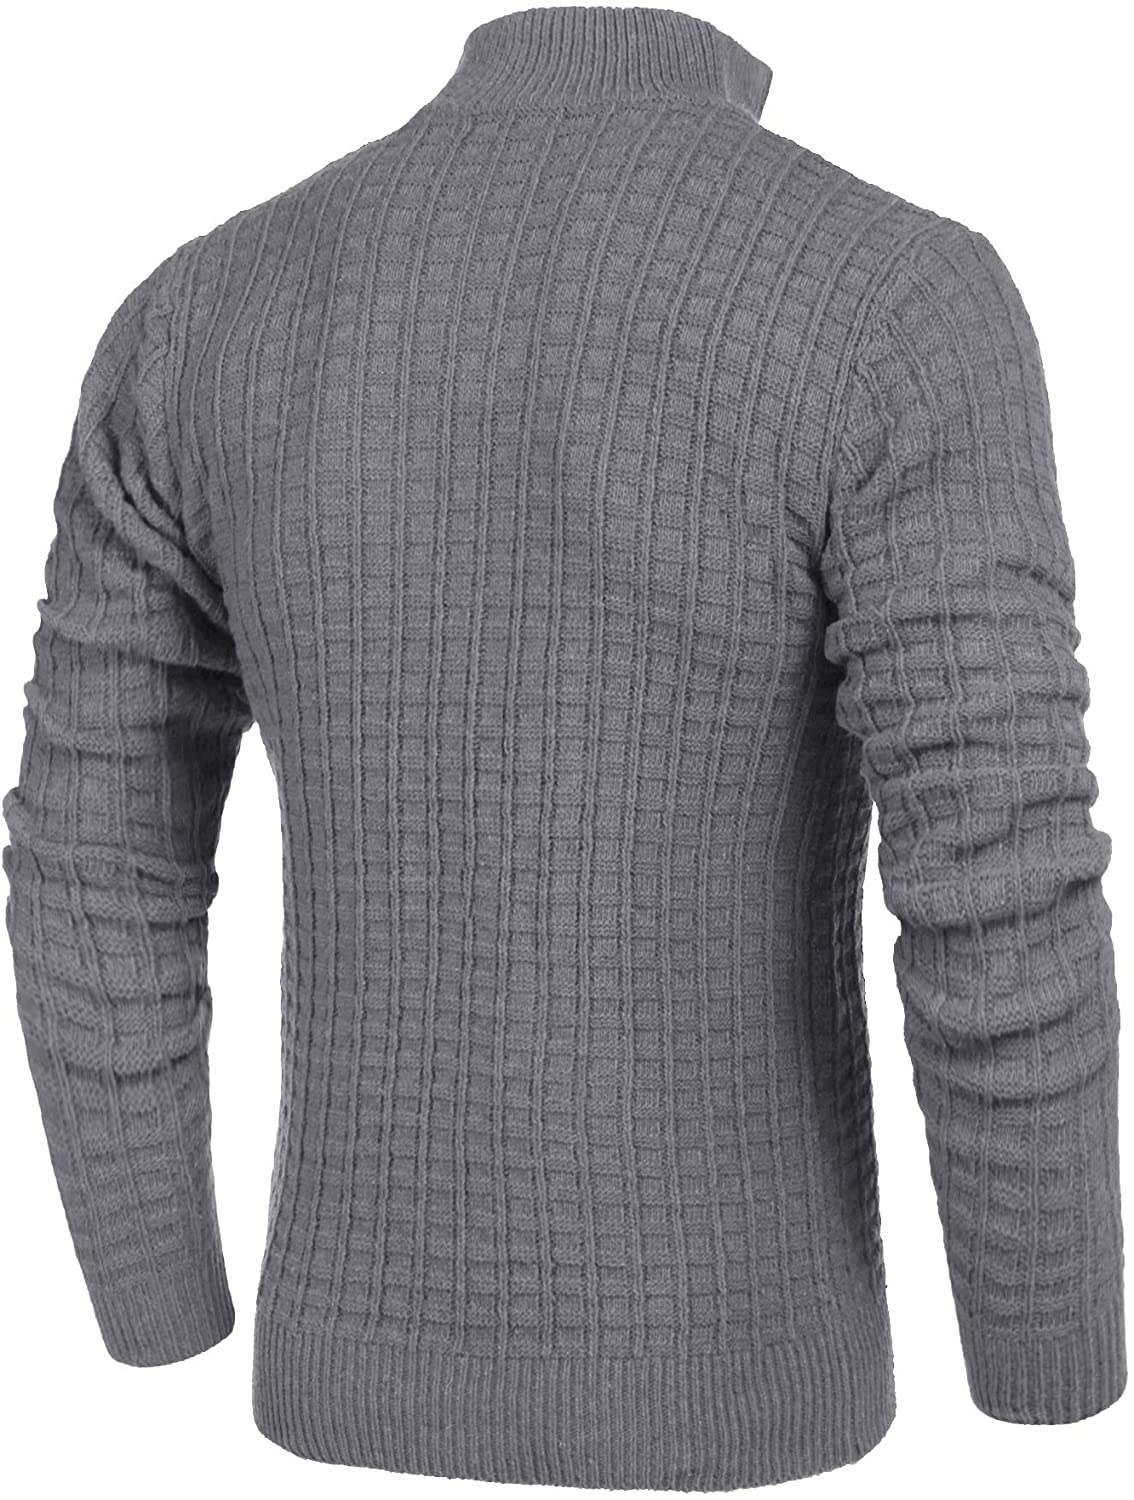 COOFANDY Men's Sweaters Quarter Zip Slim Fit Lightweight Cotton Mock ...